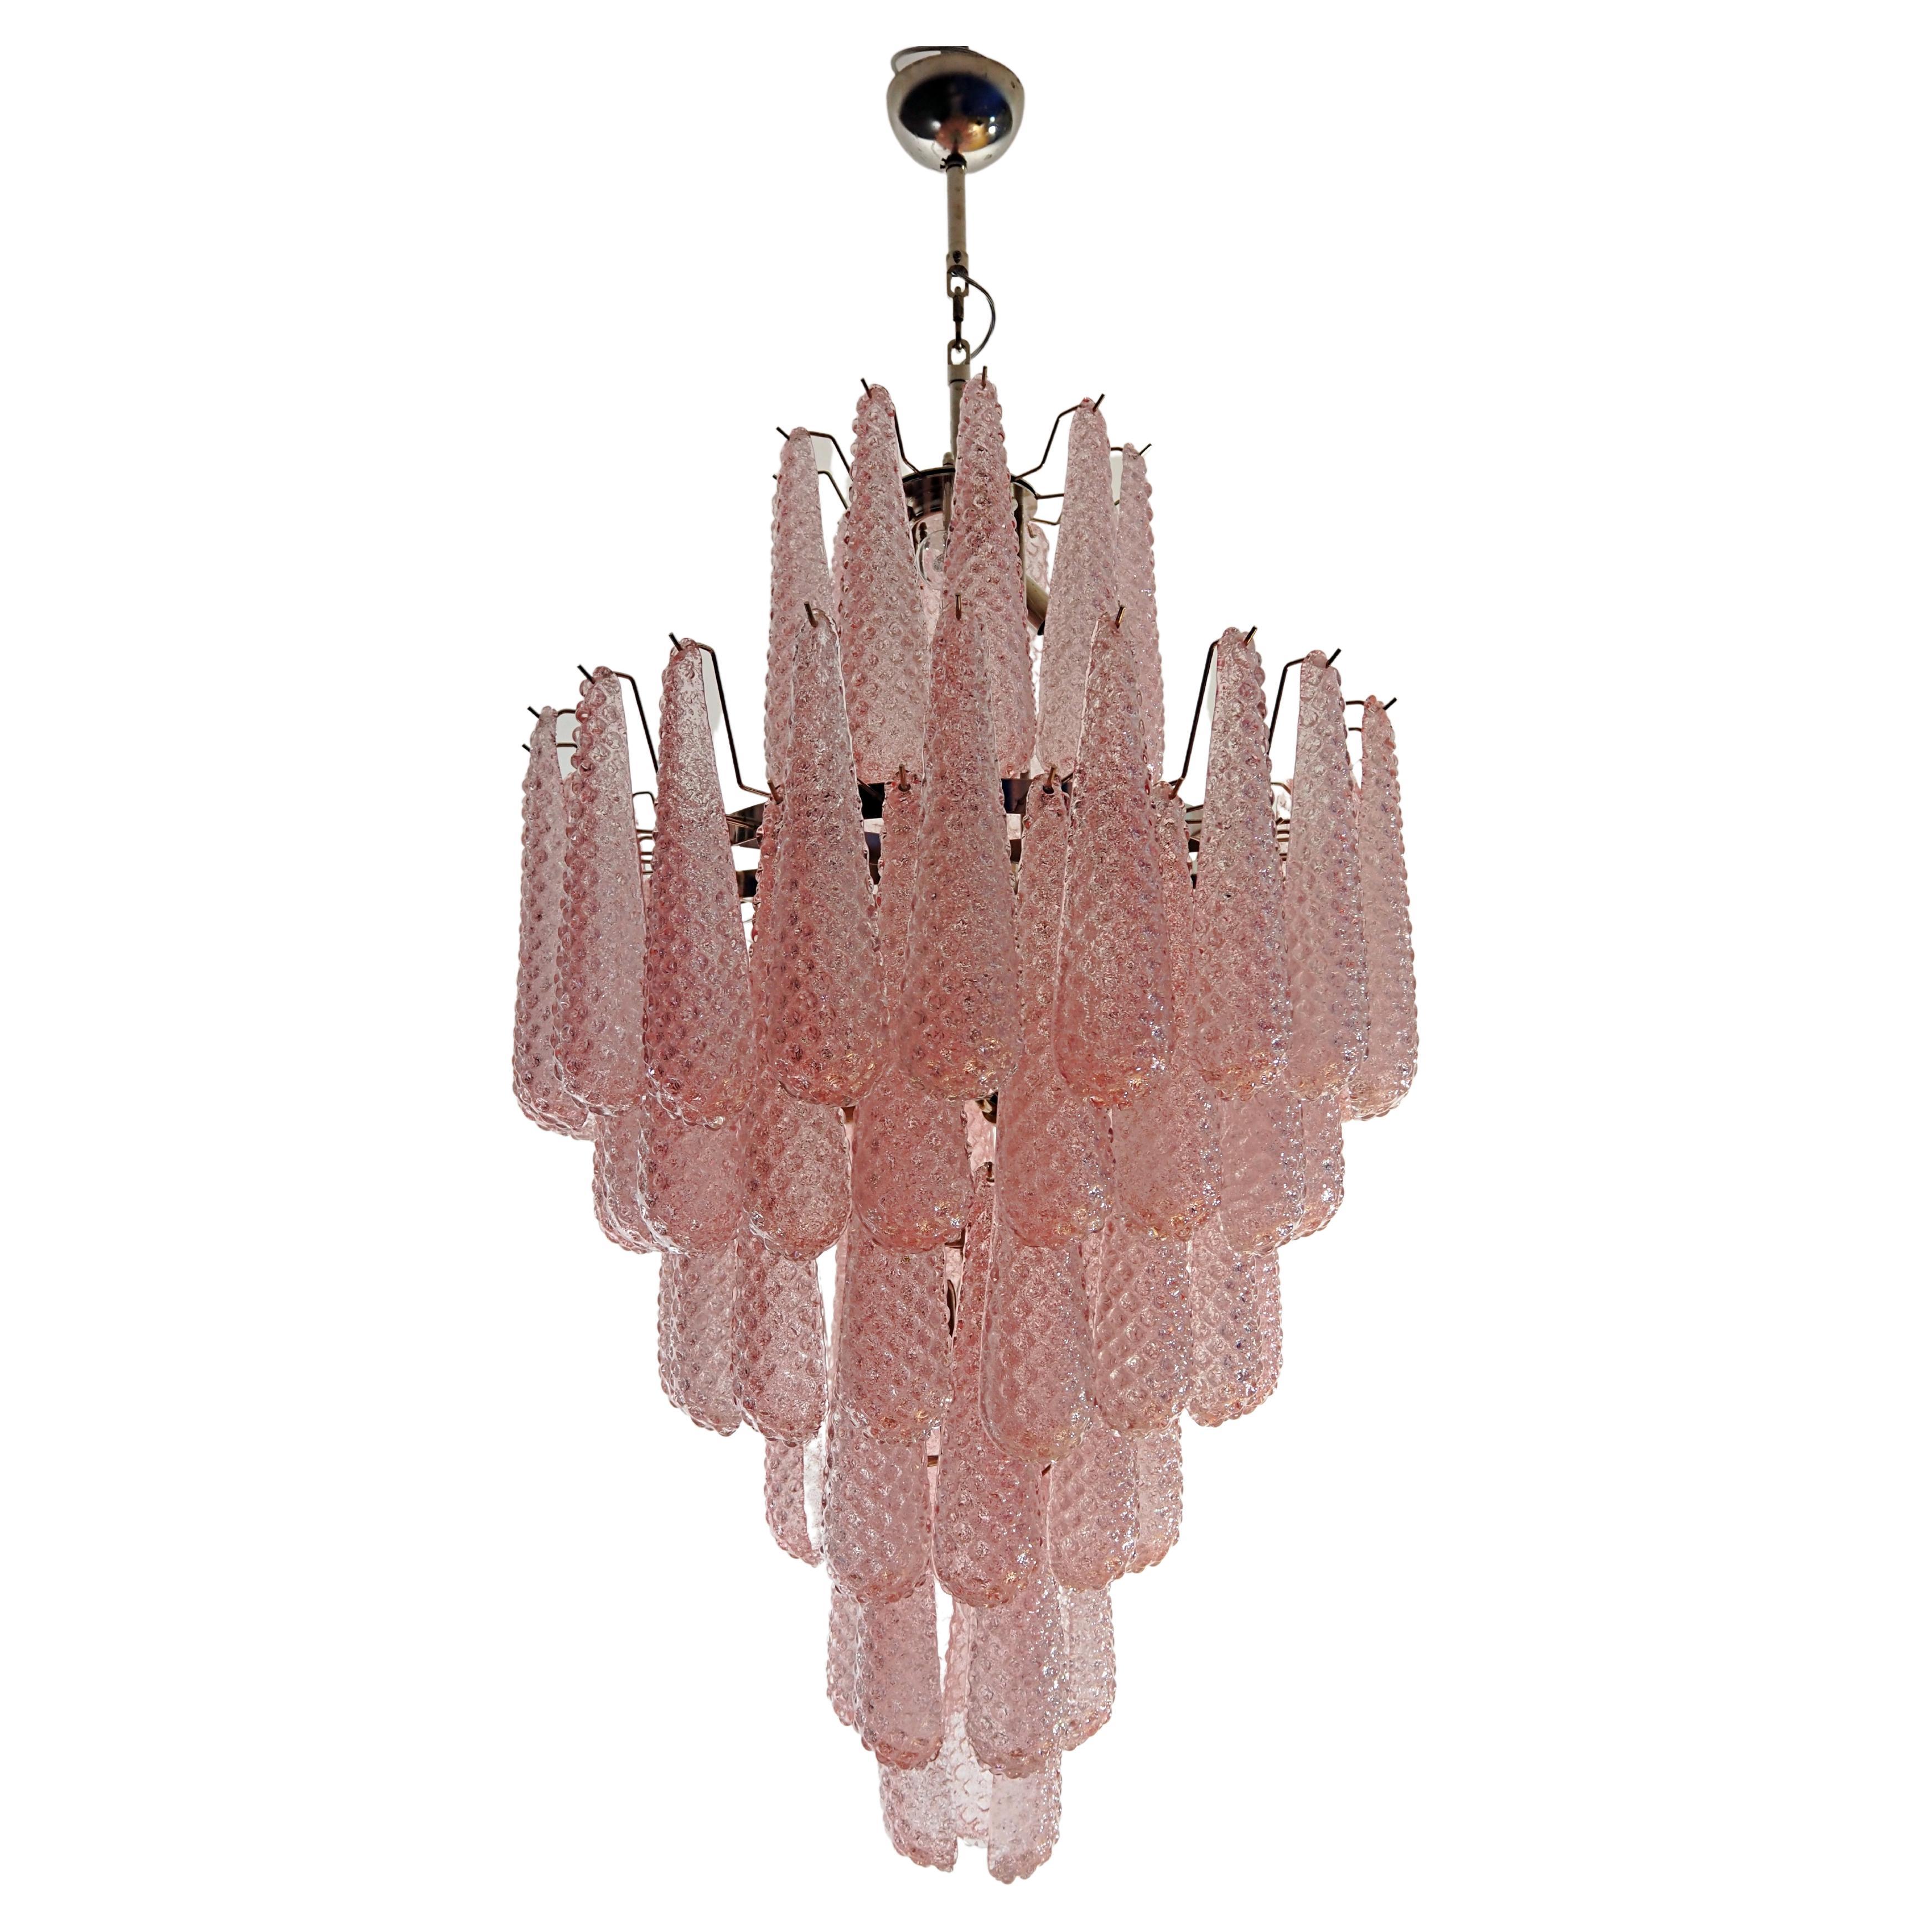 Huge Italian vintage Murano glass chandelier - 85 glass PINK petals drop For Sale